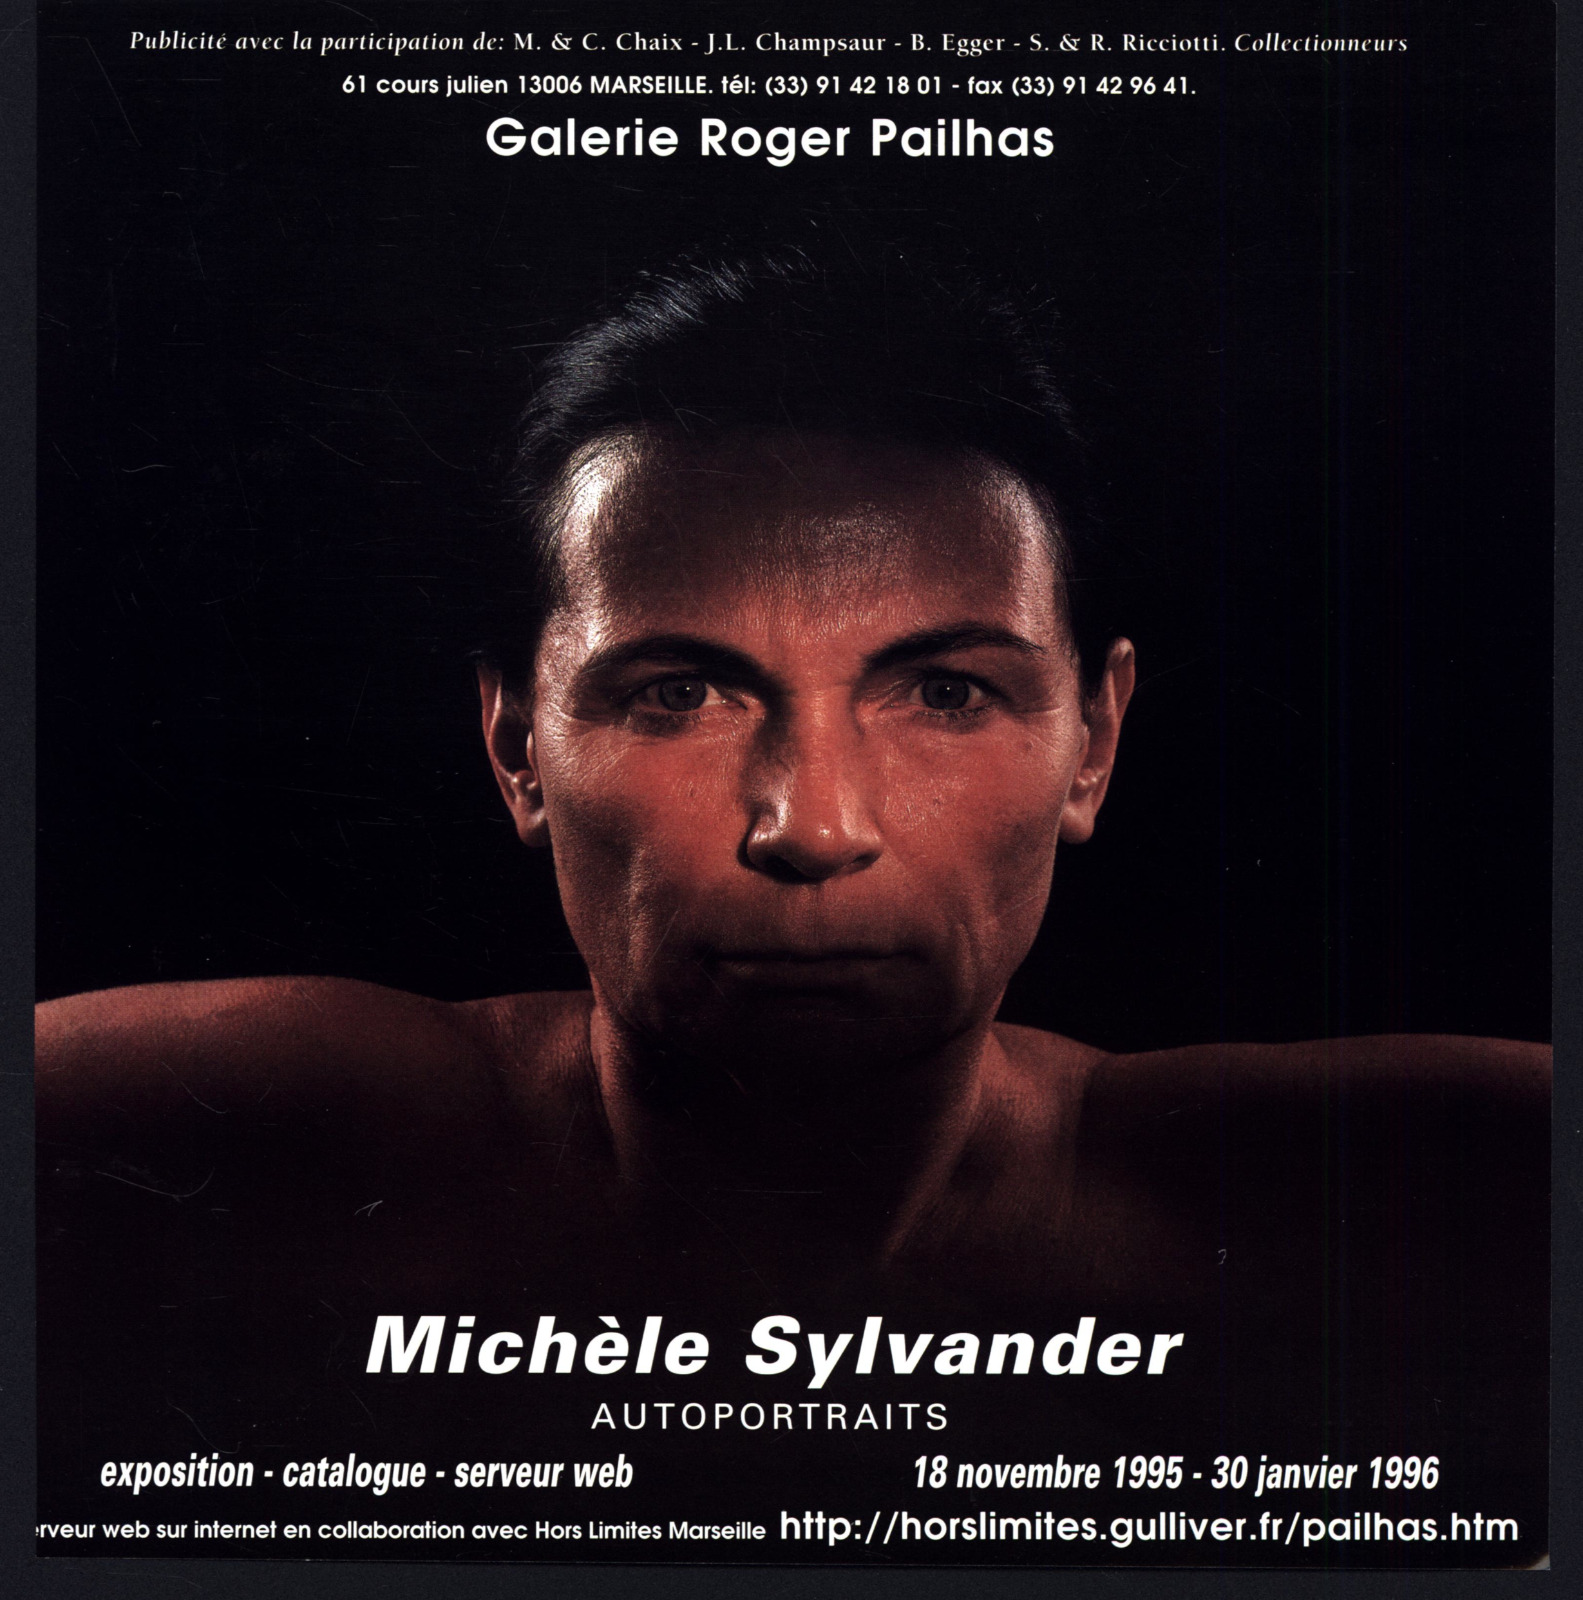 1995 MICHELE SYLVANDER AUTOPORTRAITS GALERIE ROGER PAILHAS MARSEILLE PRINT AD